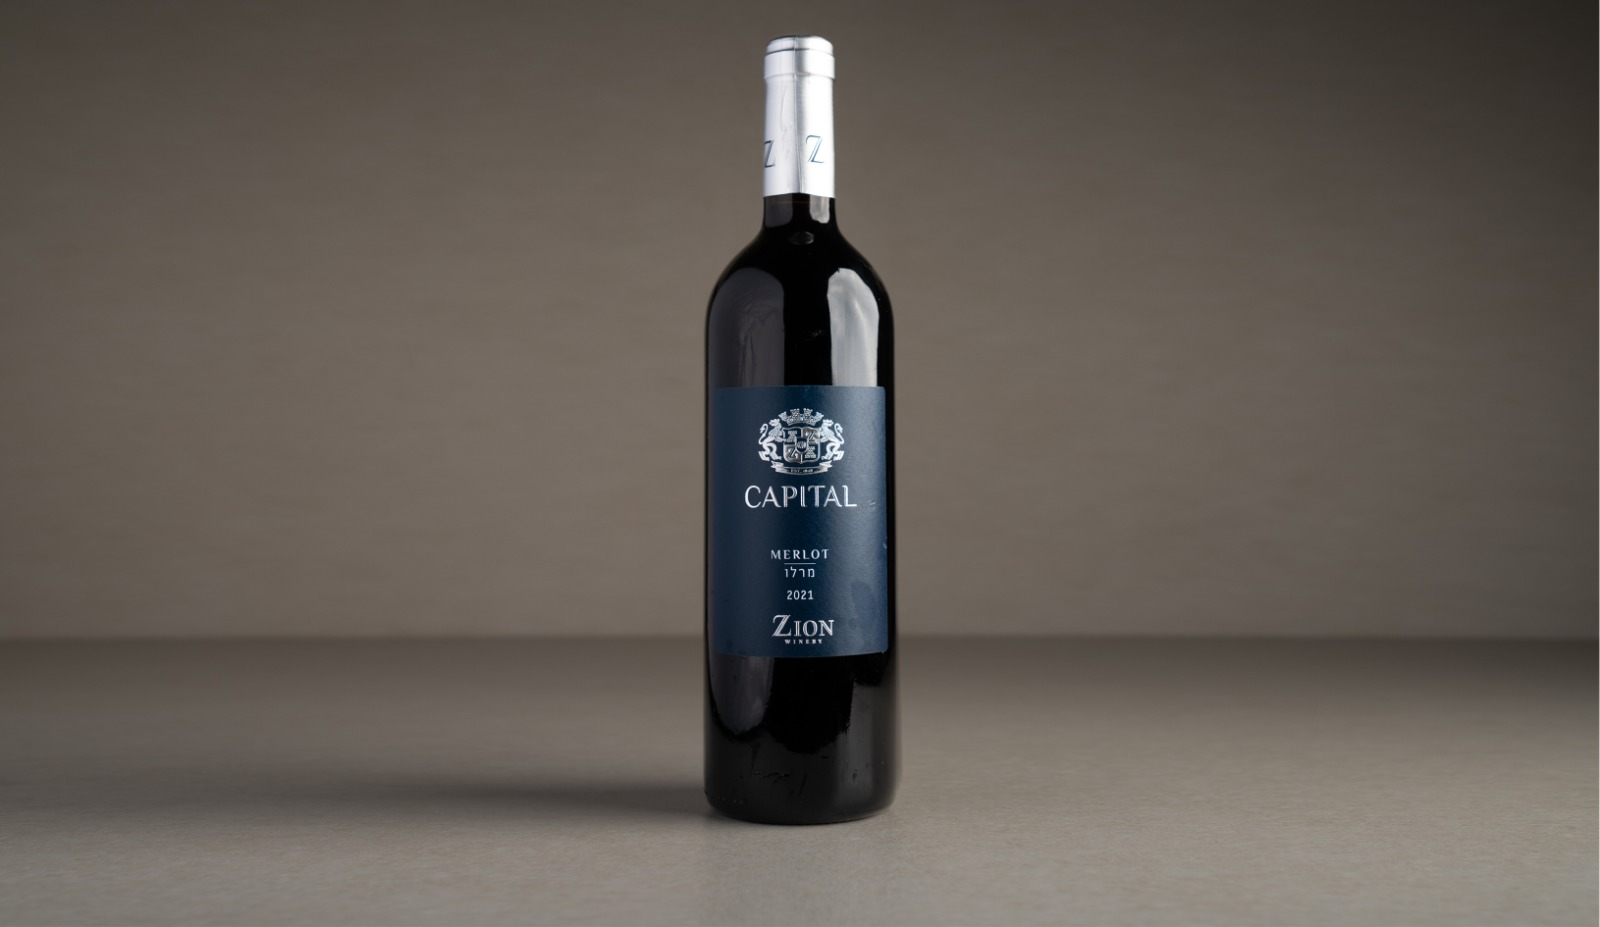 יין אדום יבש "ציון" קפיטל, מרלו 2021 